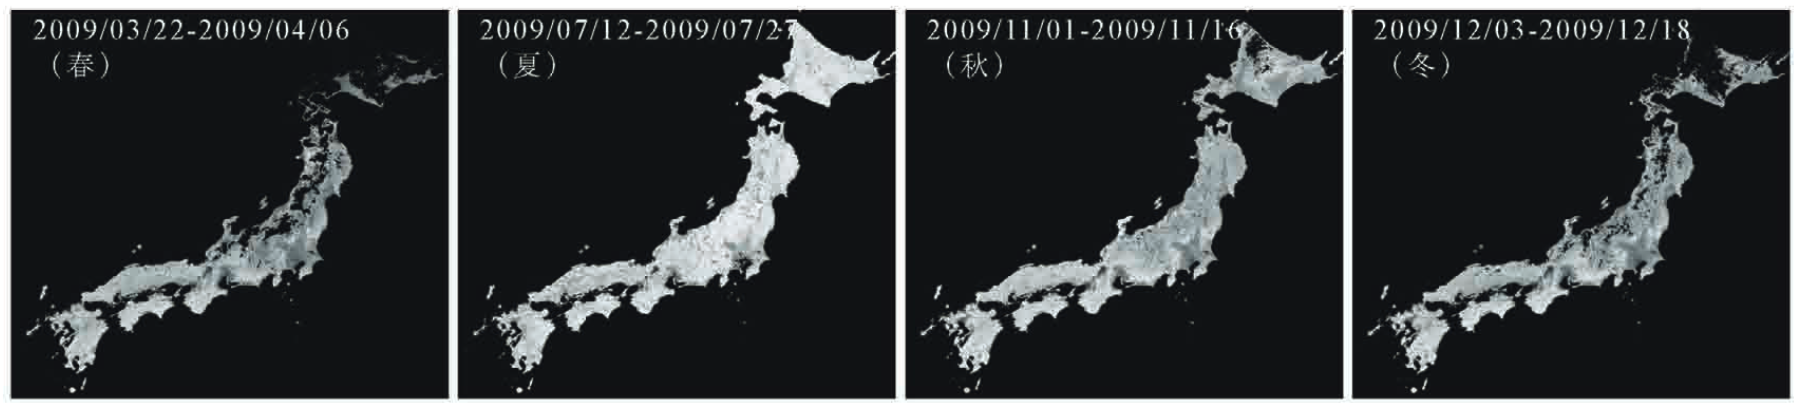 解析に使用した2009年における MODIS 植生指数の16日間コンポジット画像の例の図